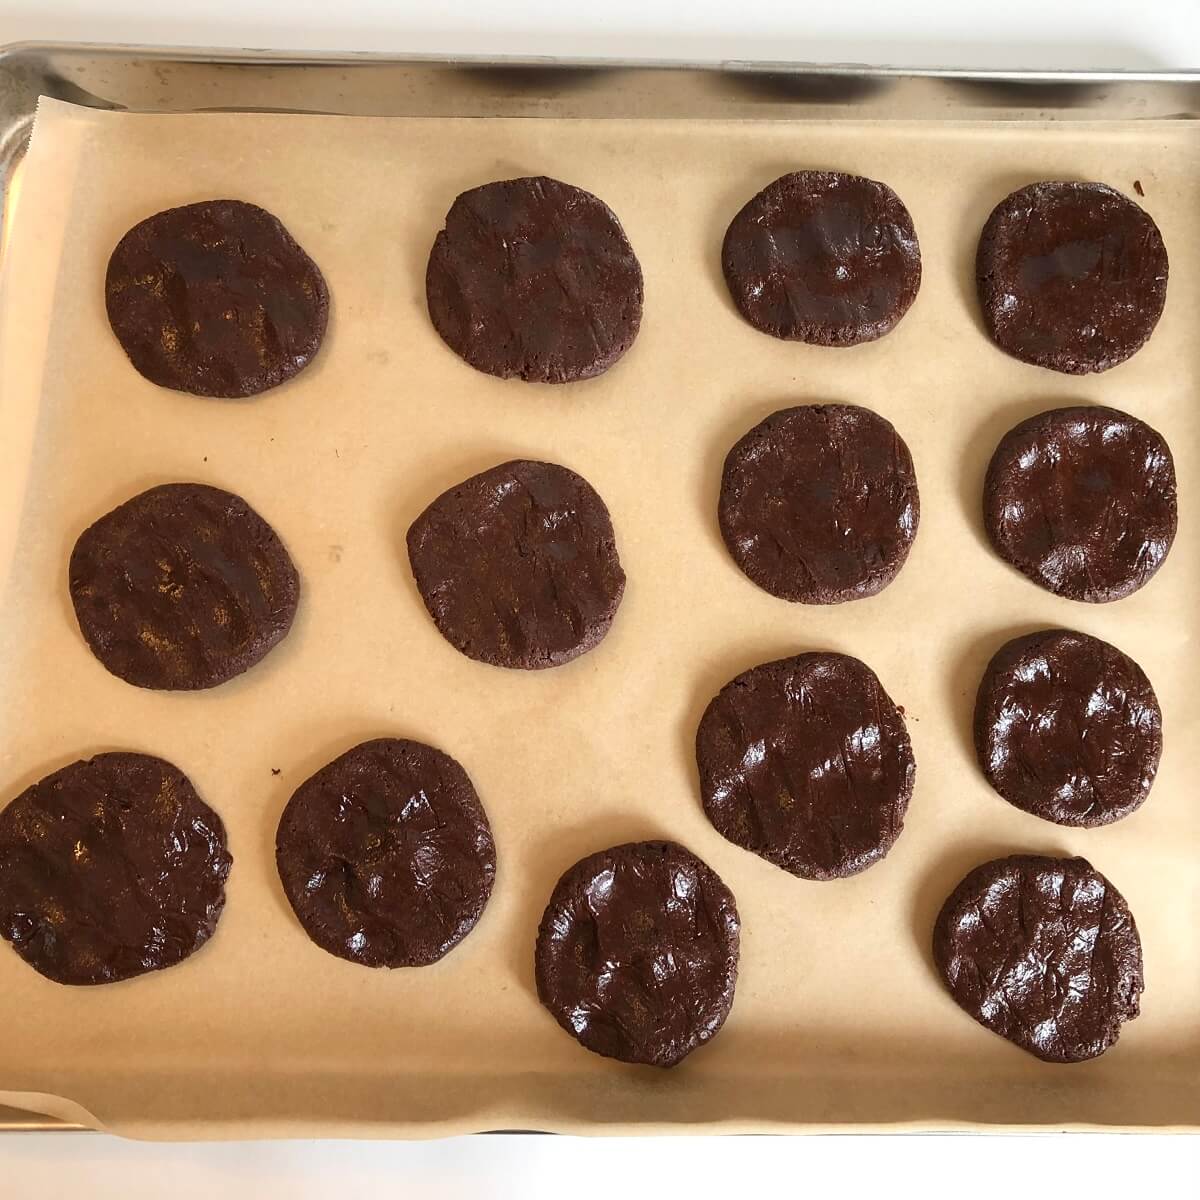 Raw spelt cookies on a sheet pan.